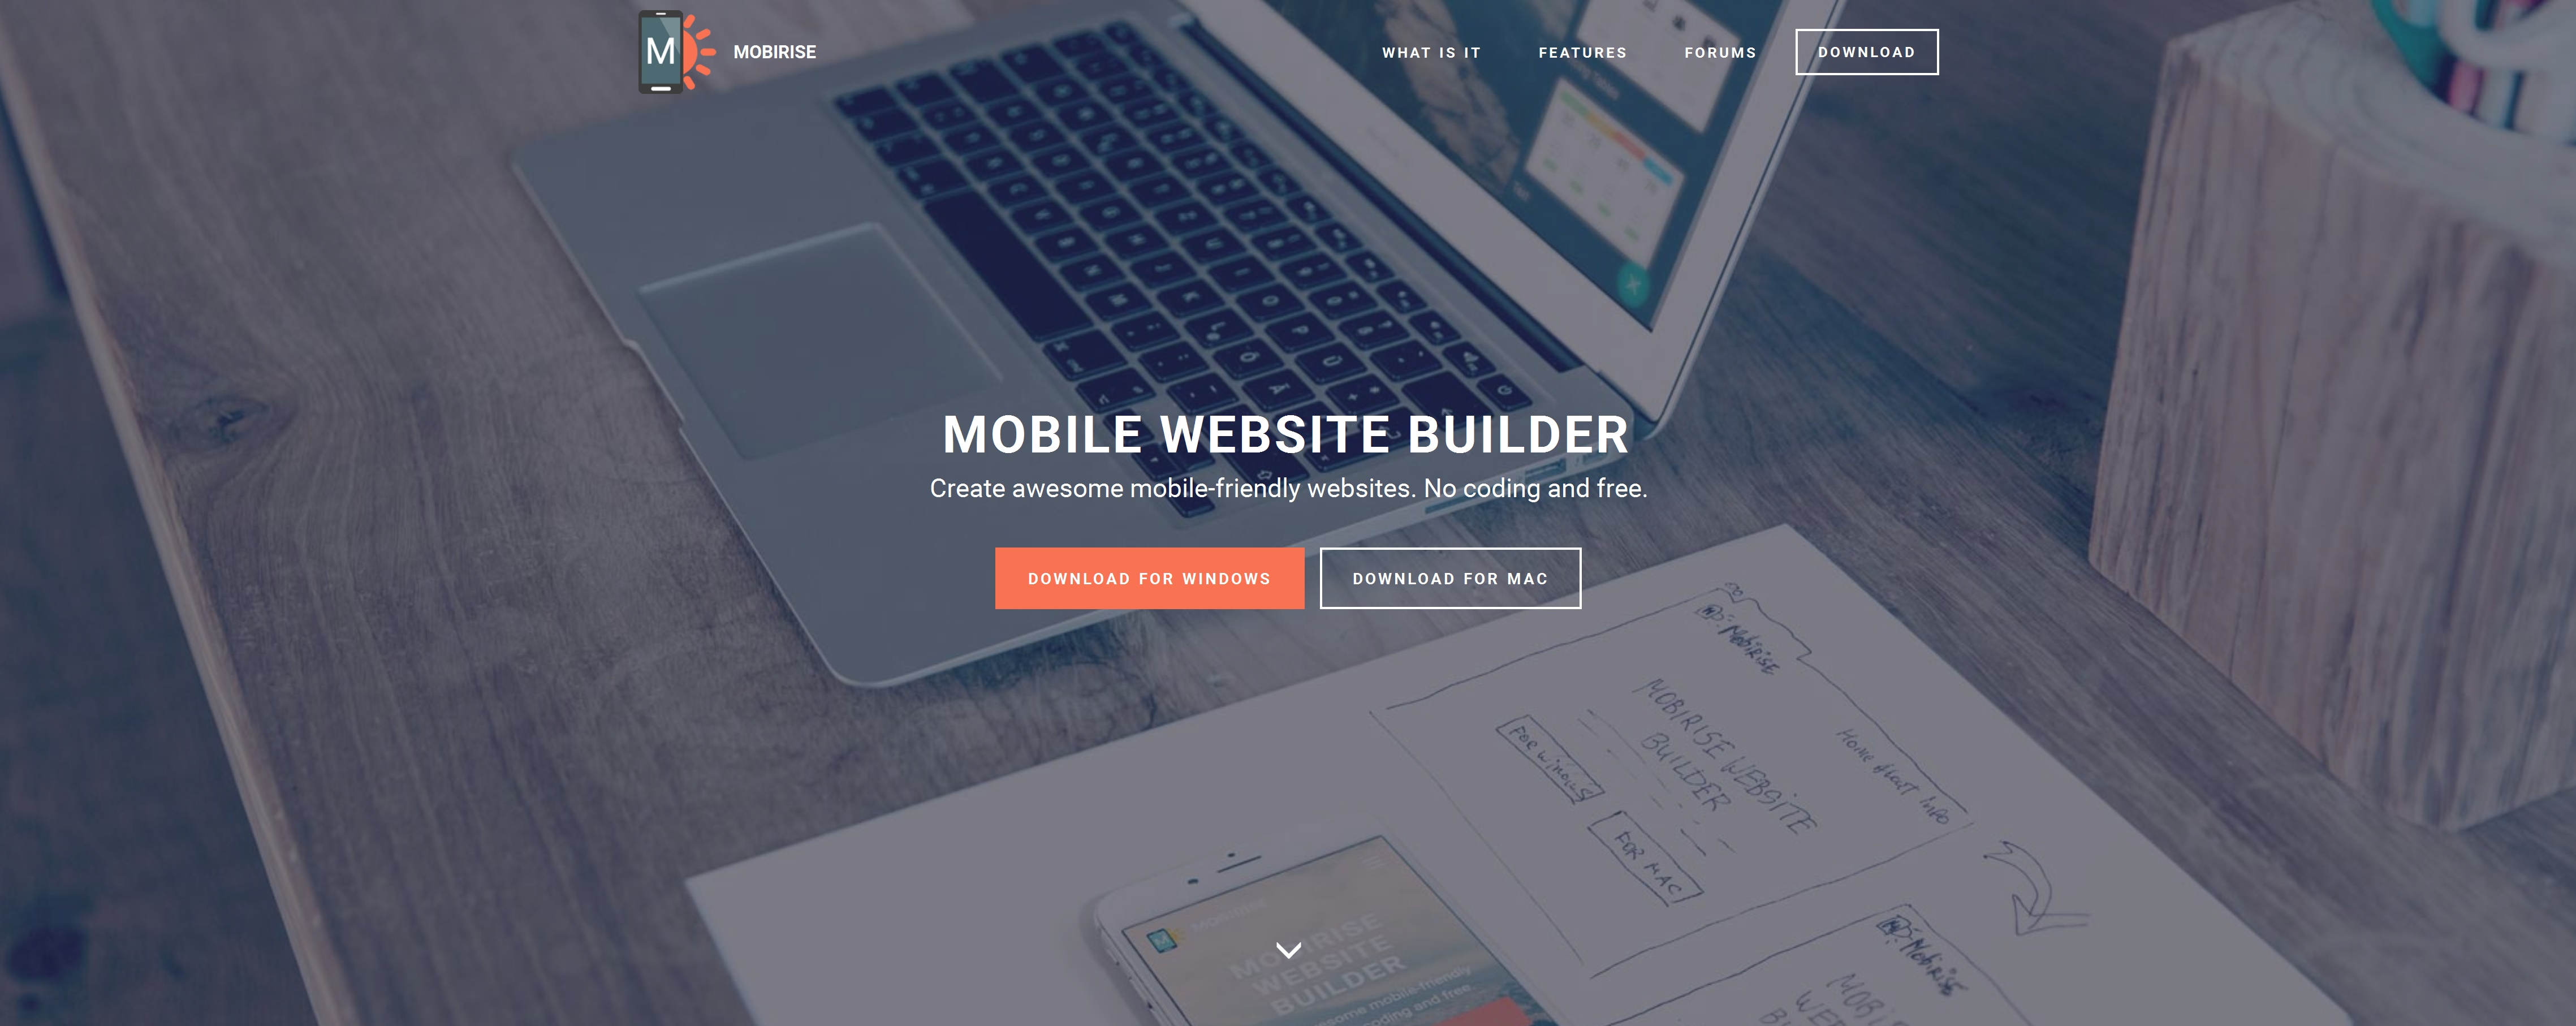 Free Mobile Website Builder 